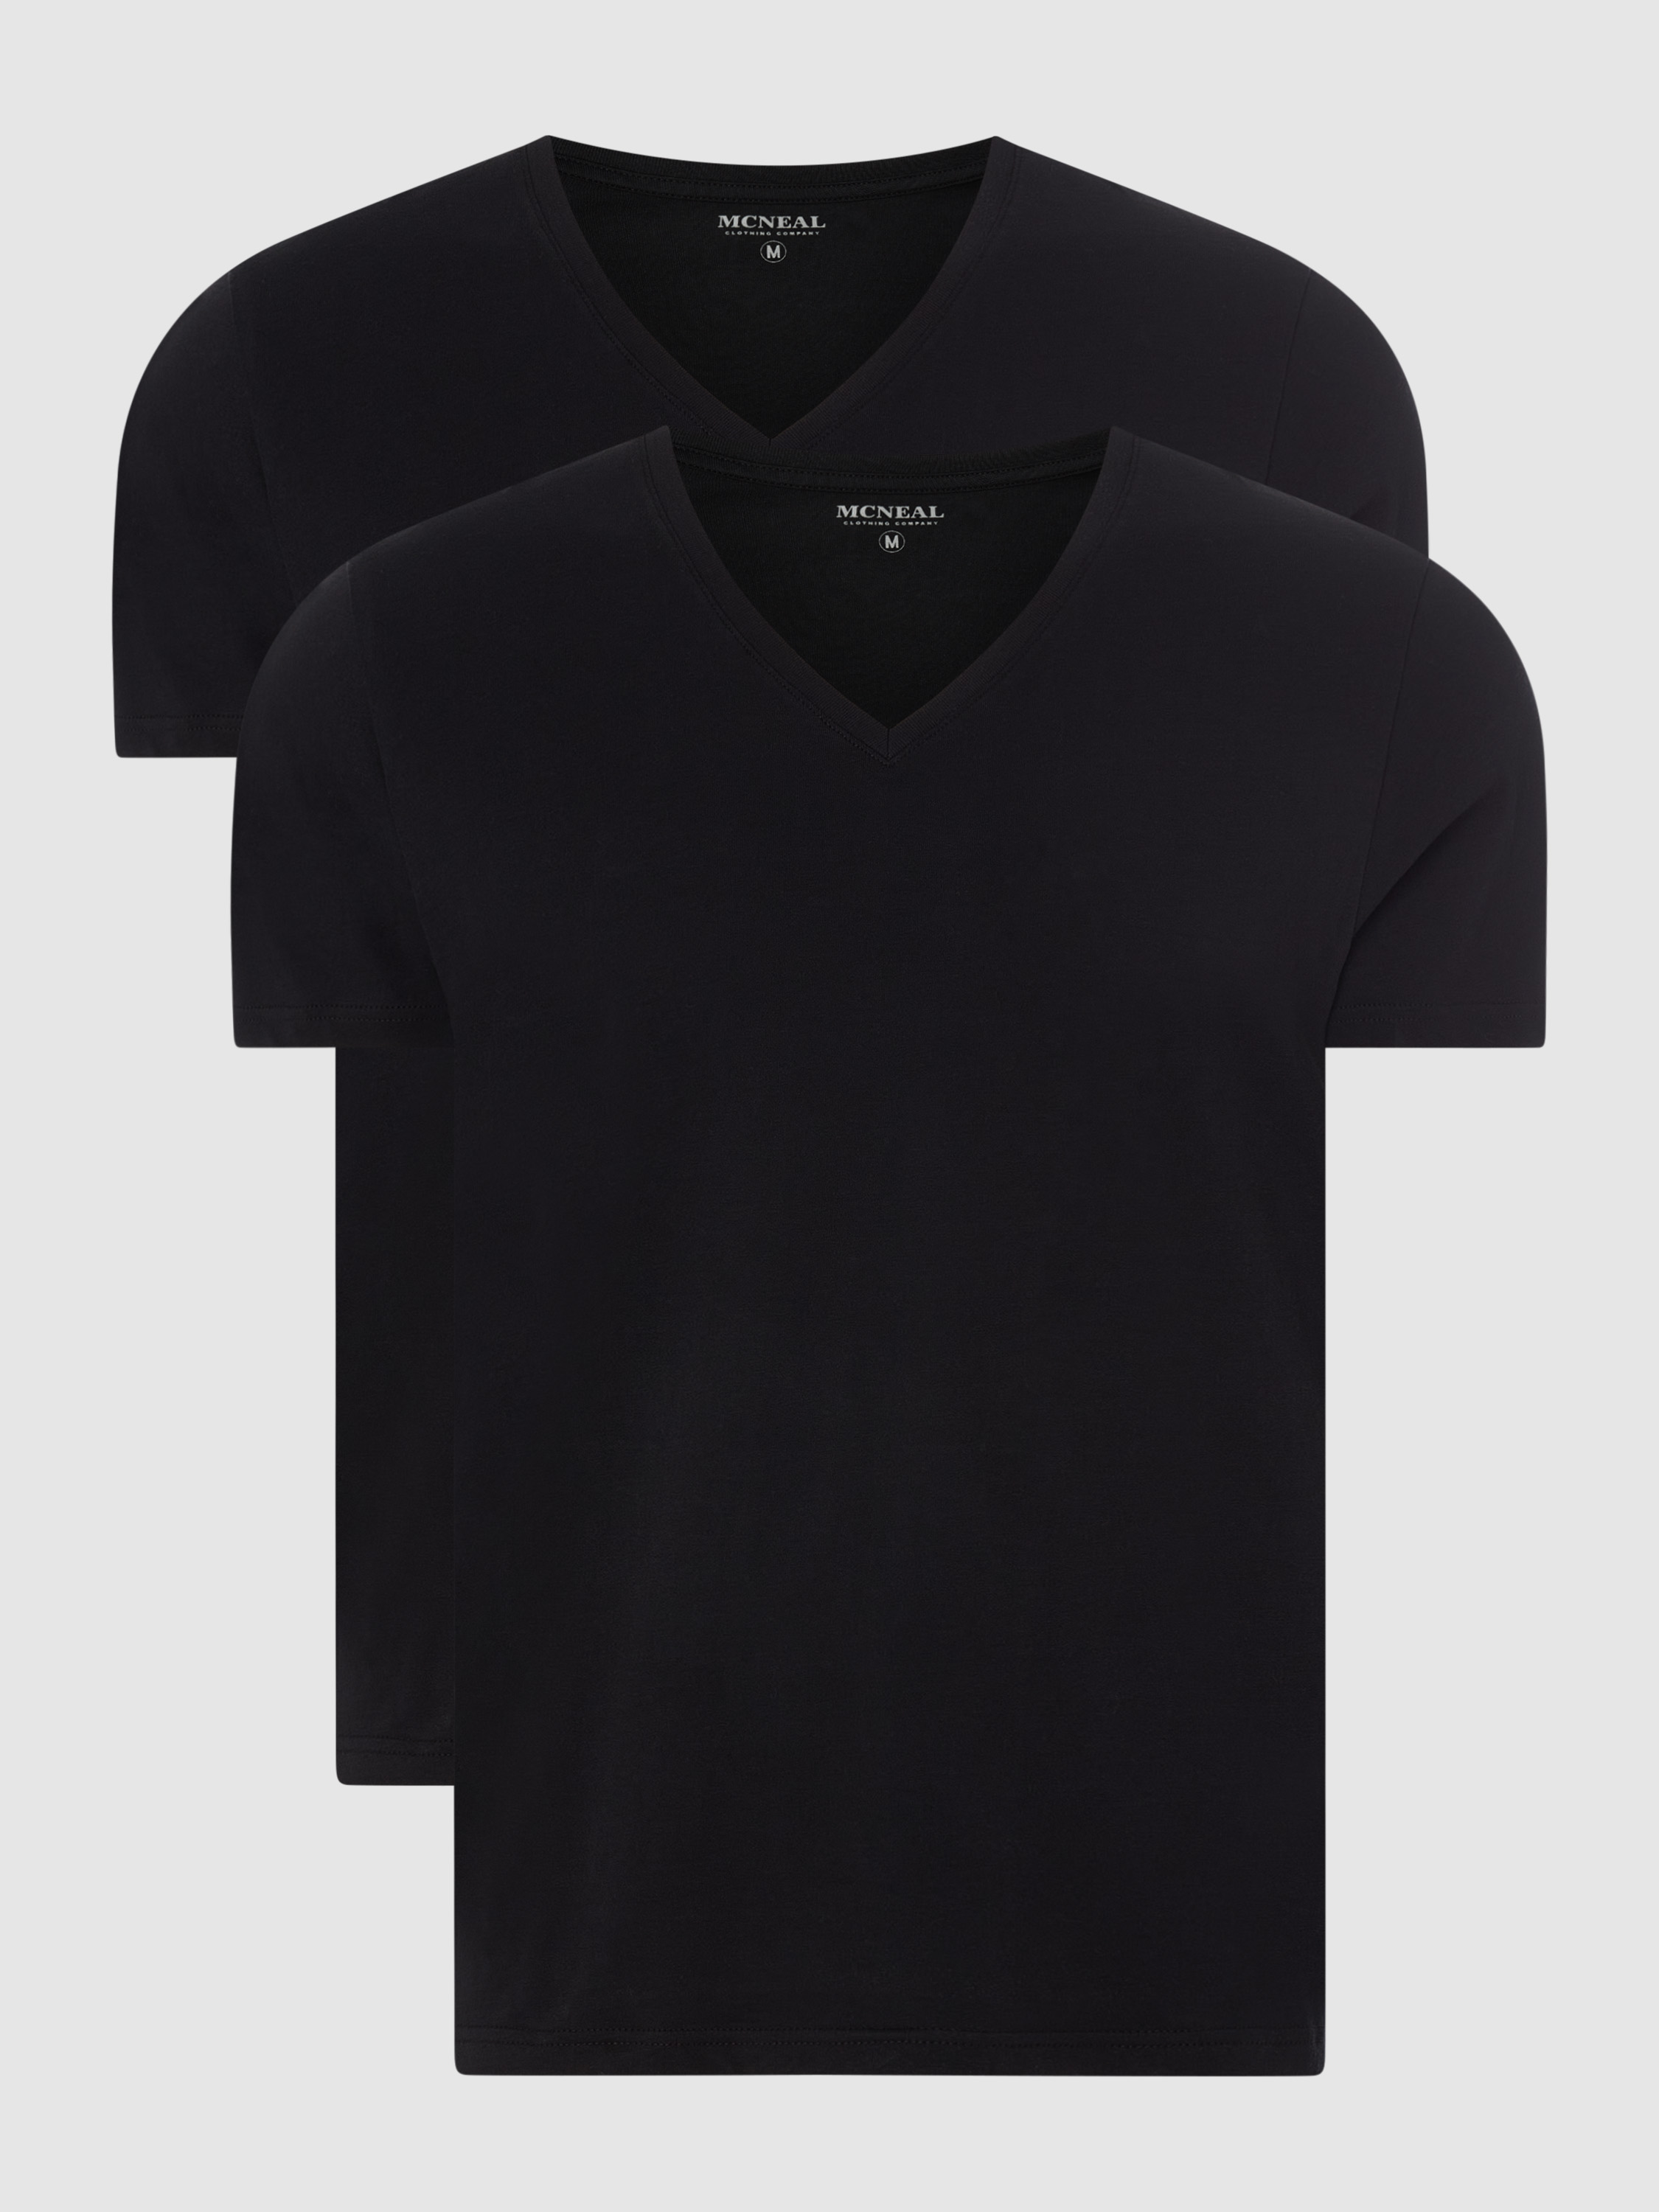 Комплект футболок мужских MCNEAL 1250287 черных XL (доставка из-за рубежа)